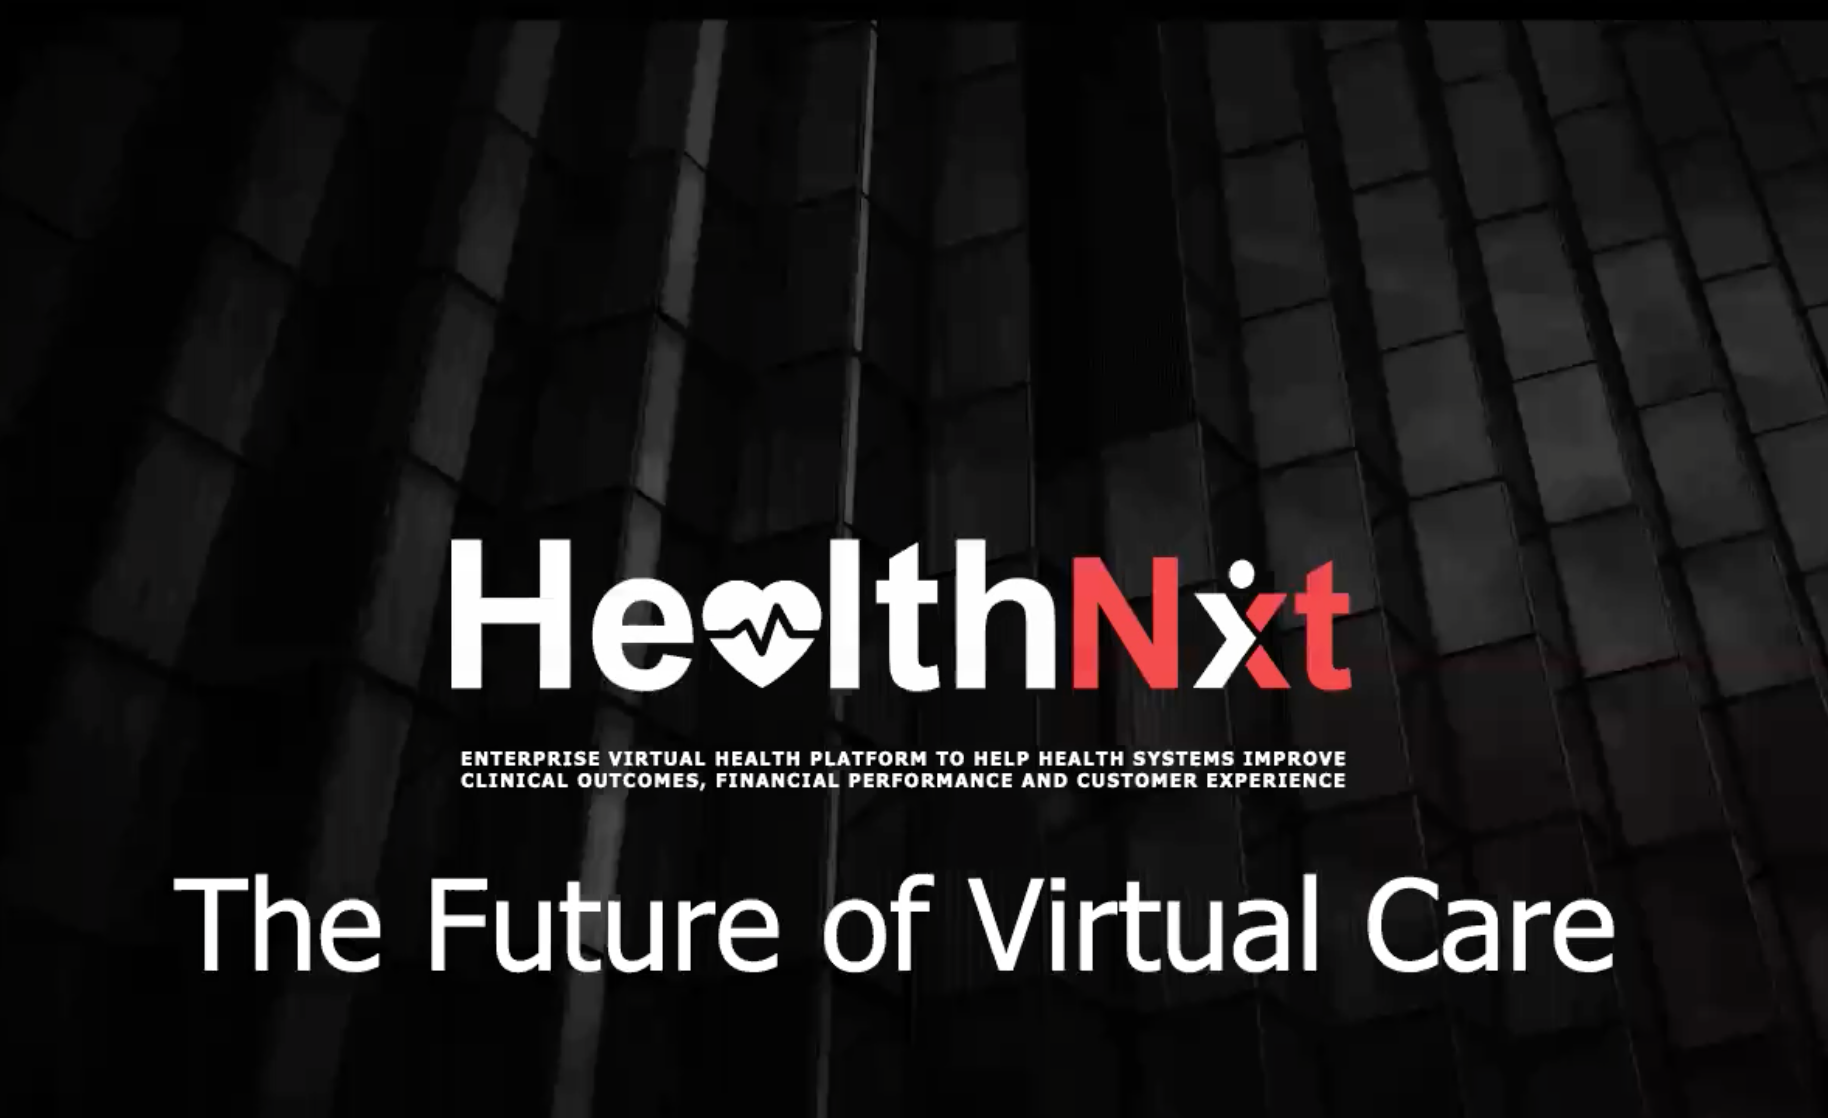 The Future of Virtual Care